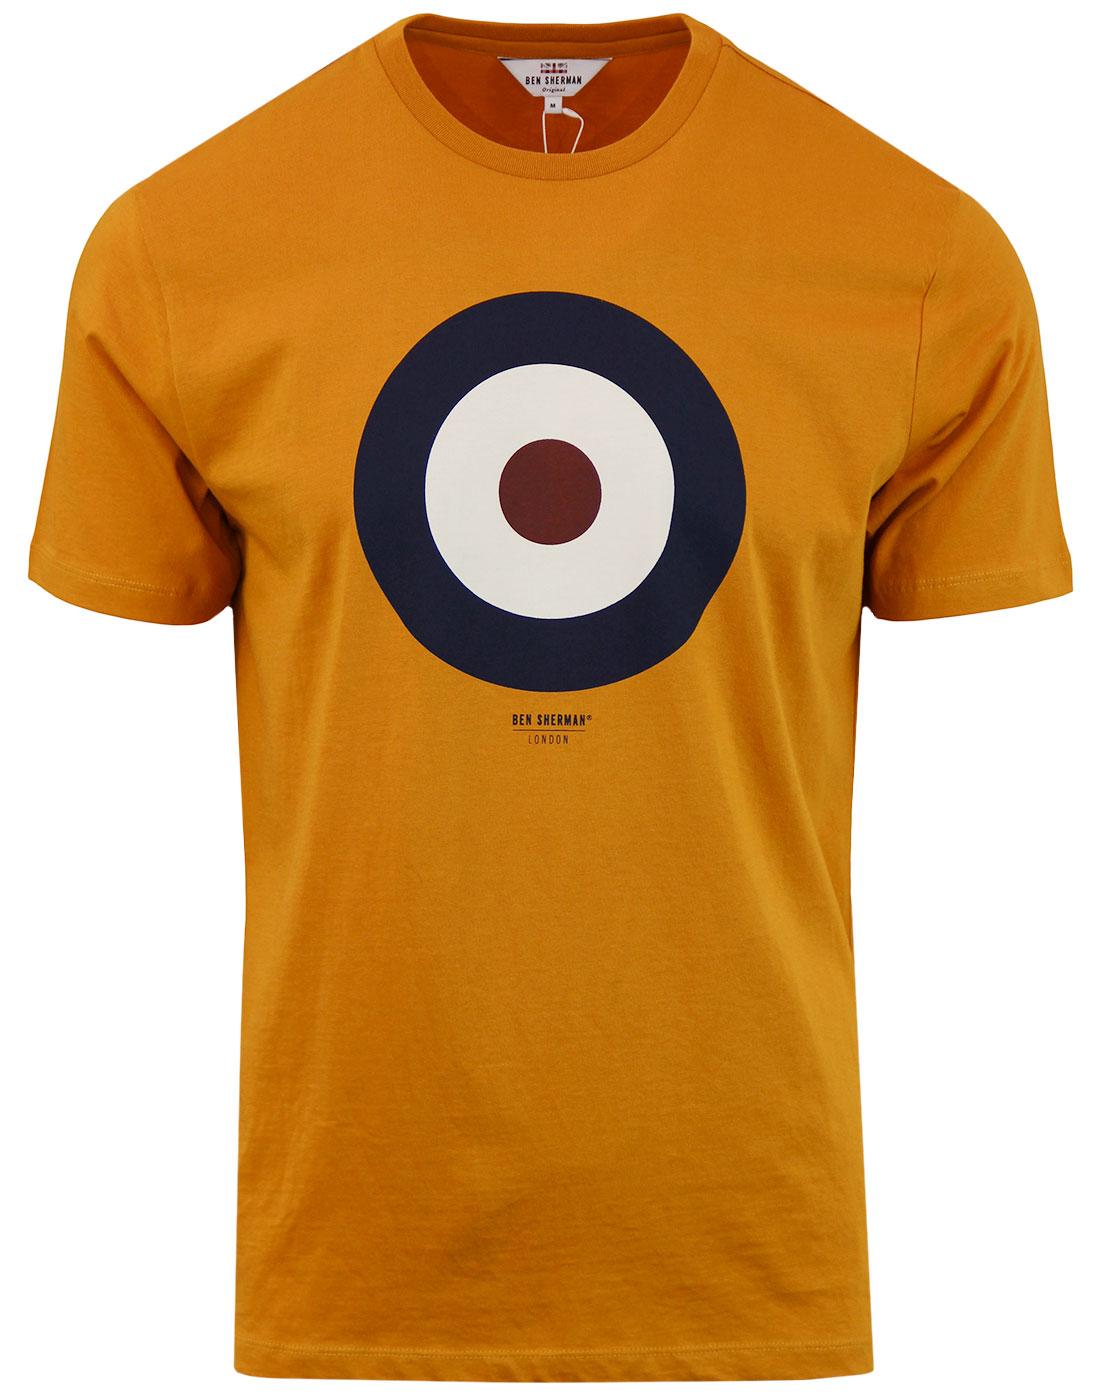 BEN SHERMAN Retro 1960s Pop Art Mod Target T-Shirt Ochre